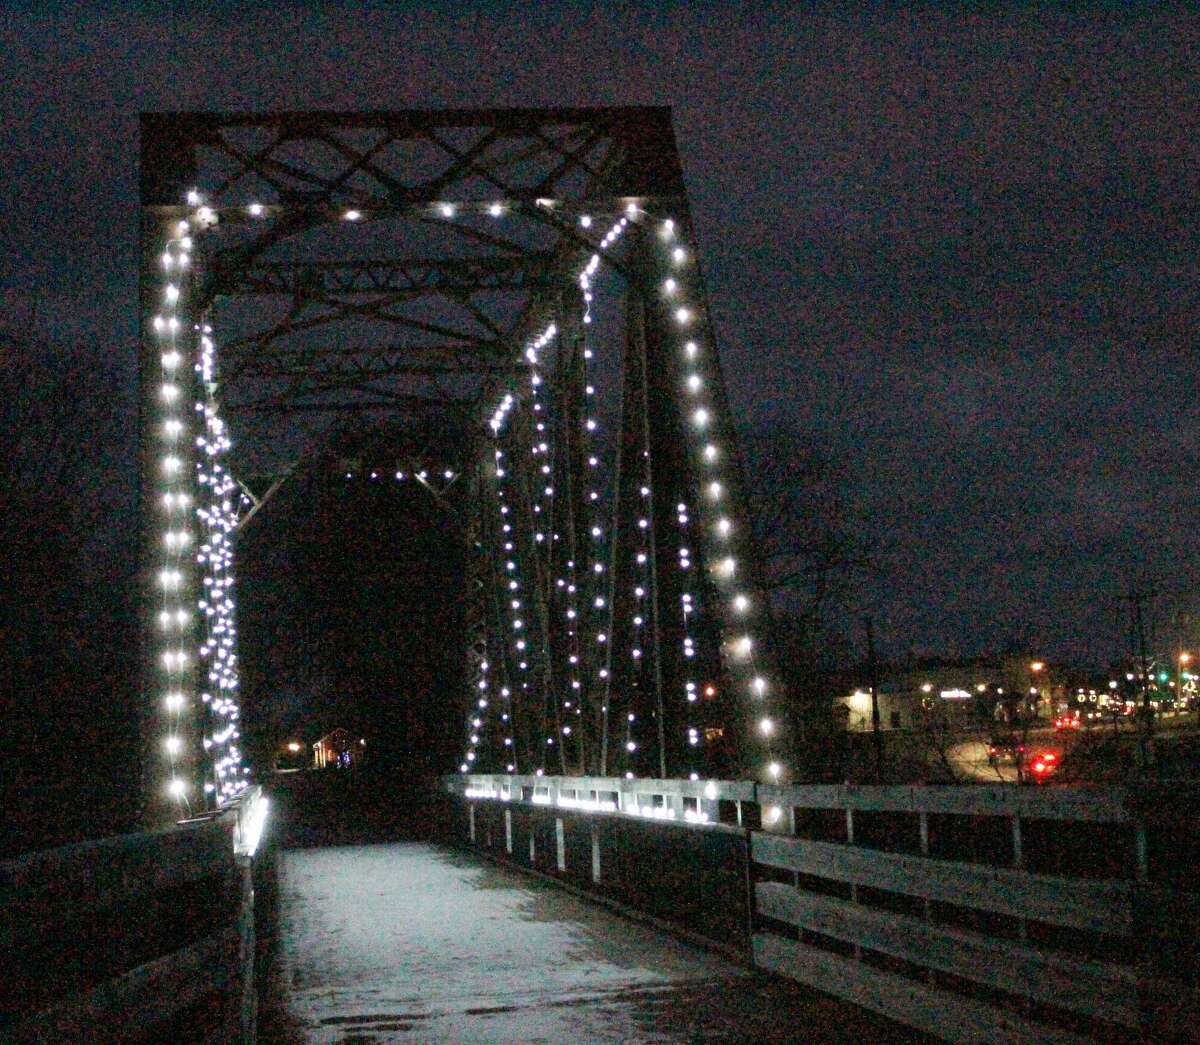 The Evart Railroad Bridge illumates the Pere Marquette Rail Trail on a recent cold evening.